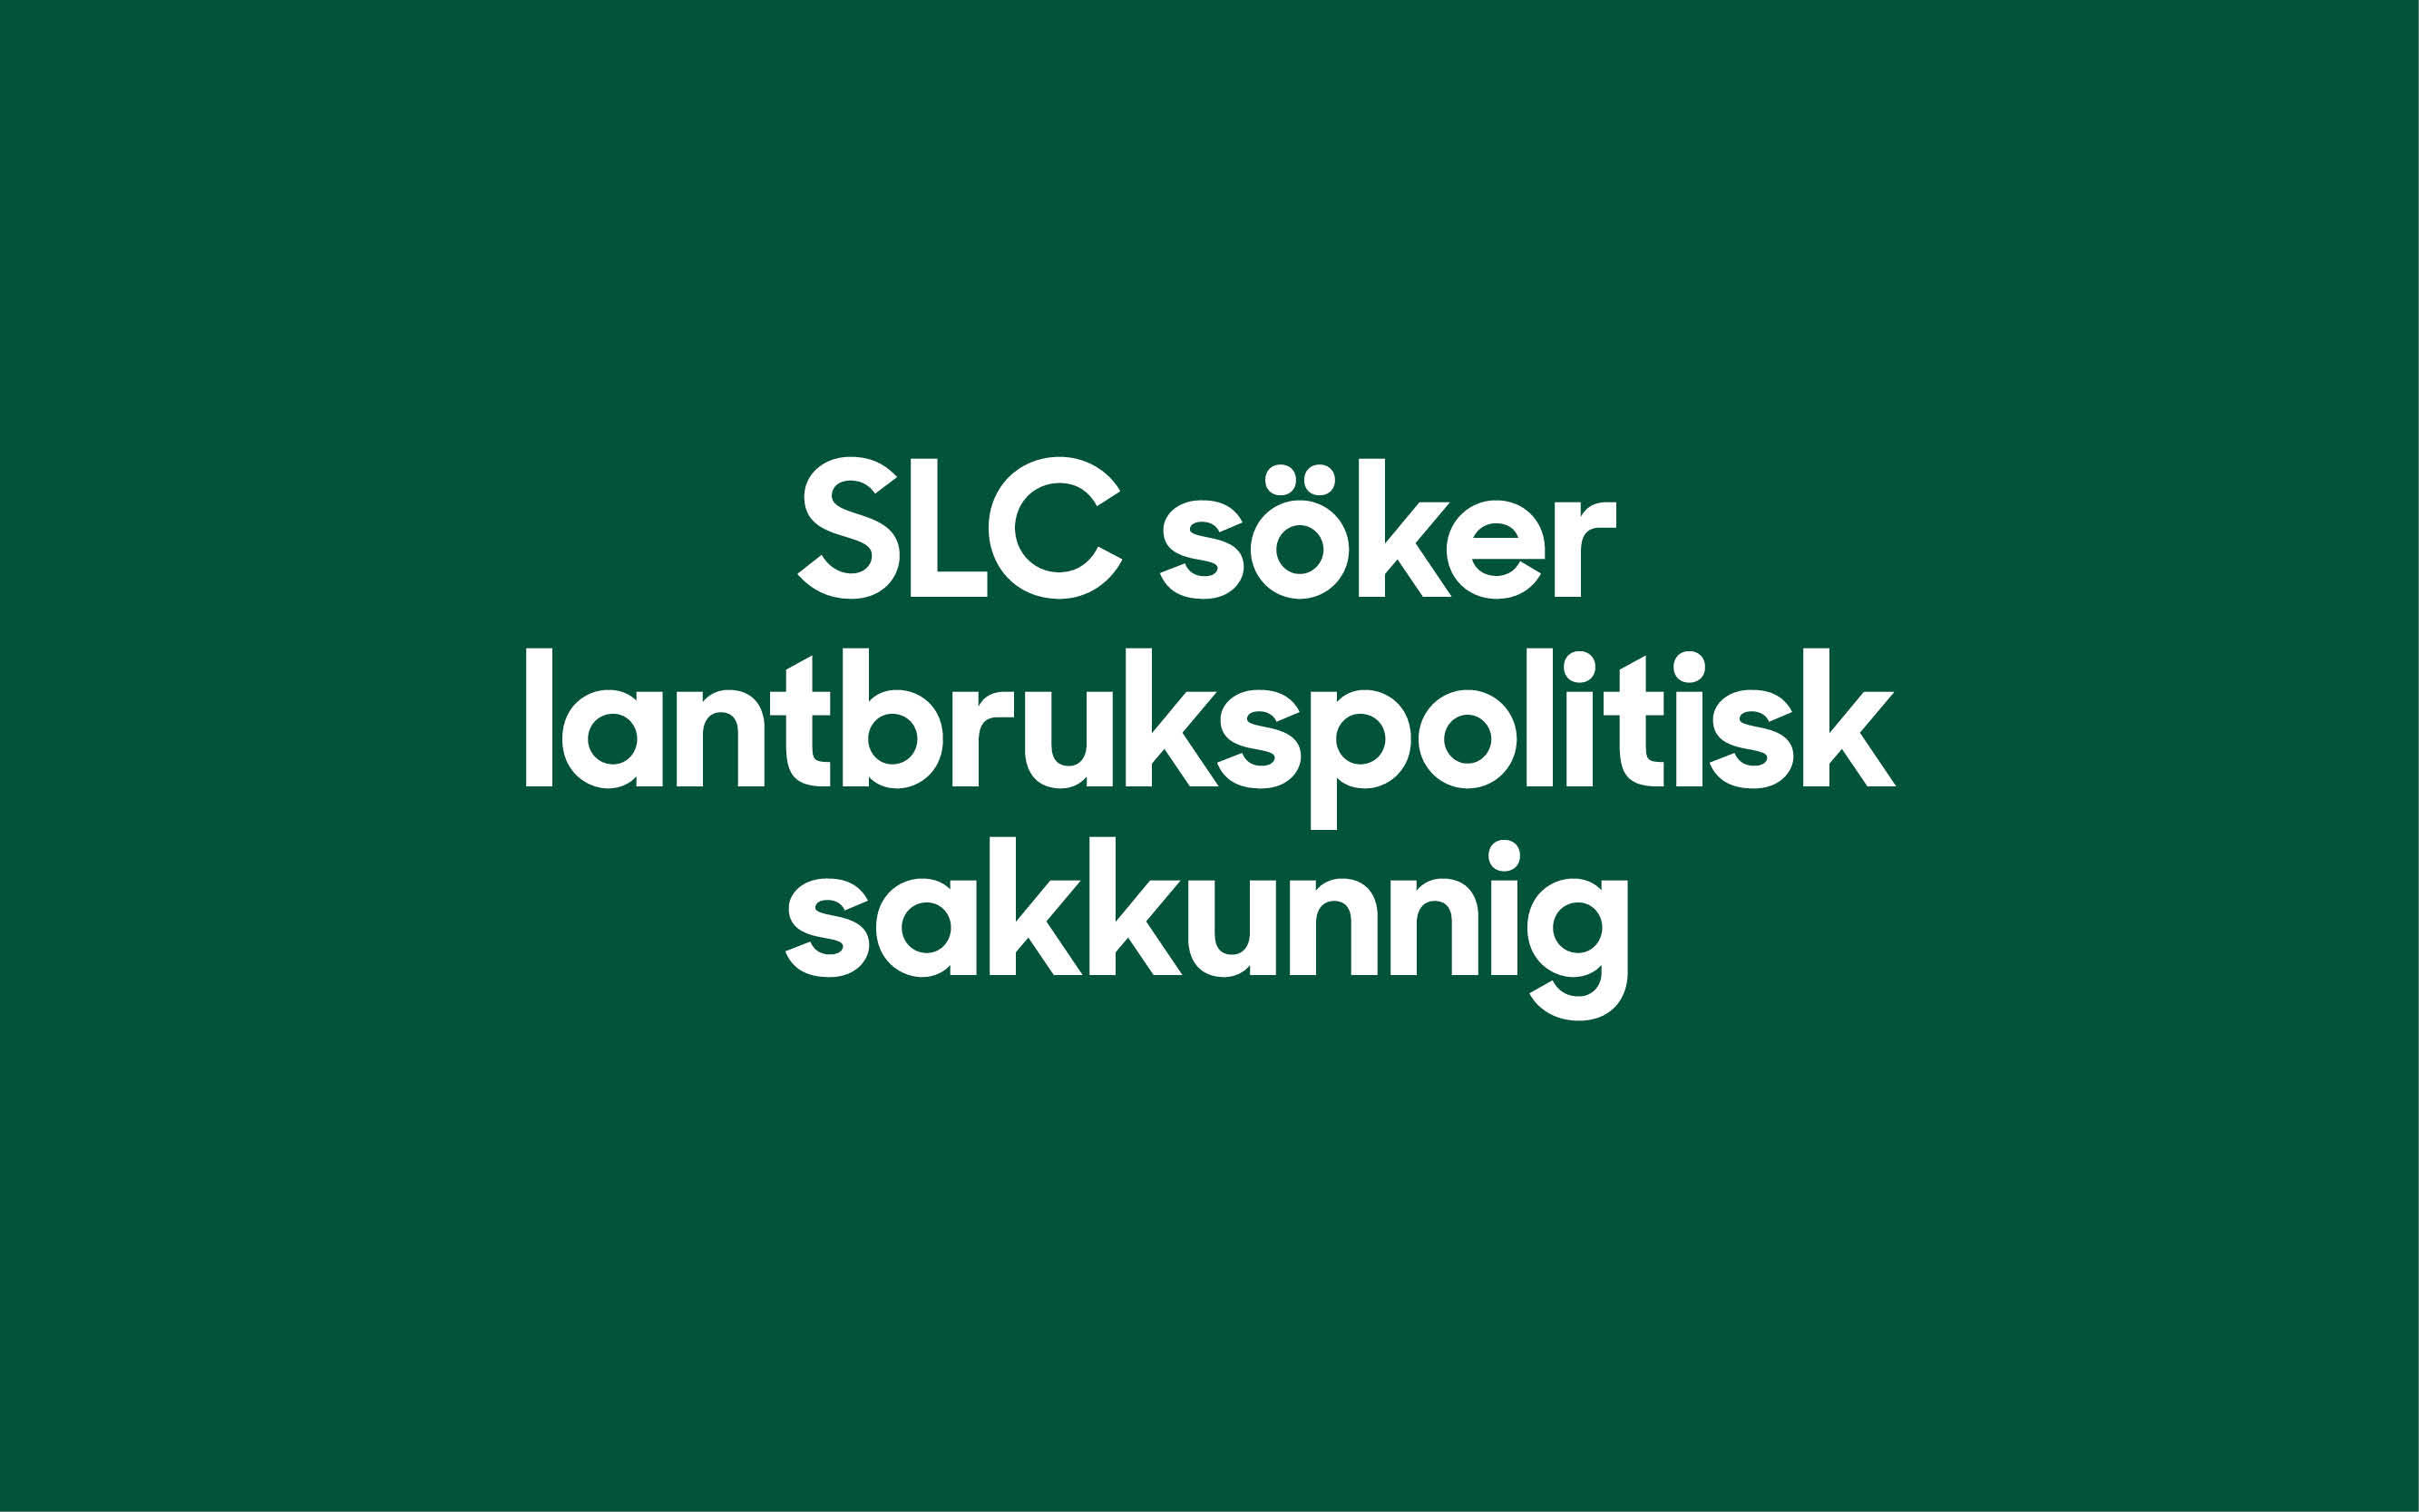 SLC - SLC soker lantbrukspolitisk sakkunnig webbanner 2022